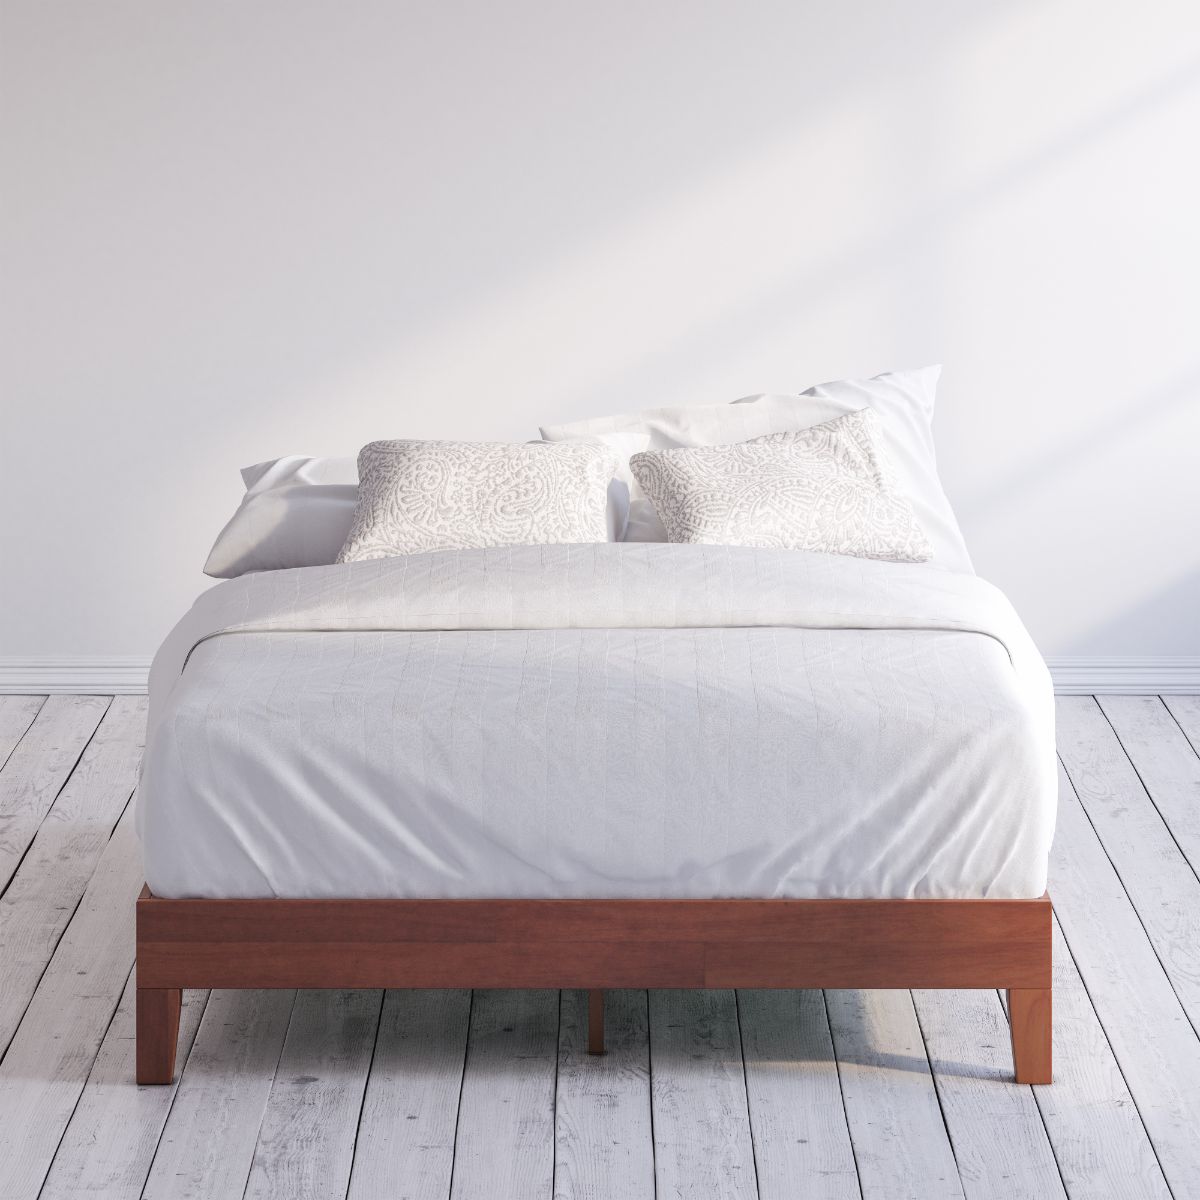 Wen Deluxe Wood Platform Bed Frame , Zinus Queen